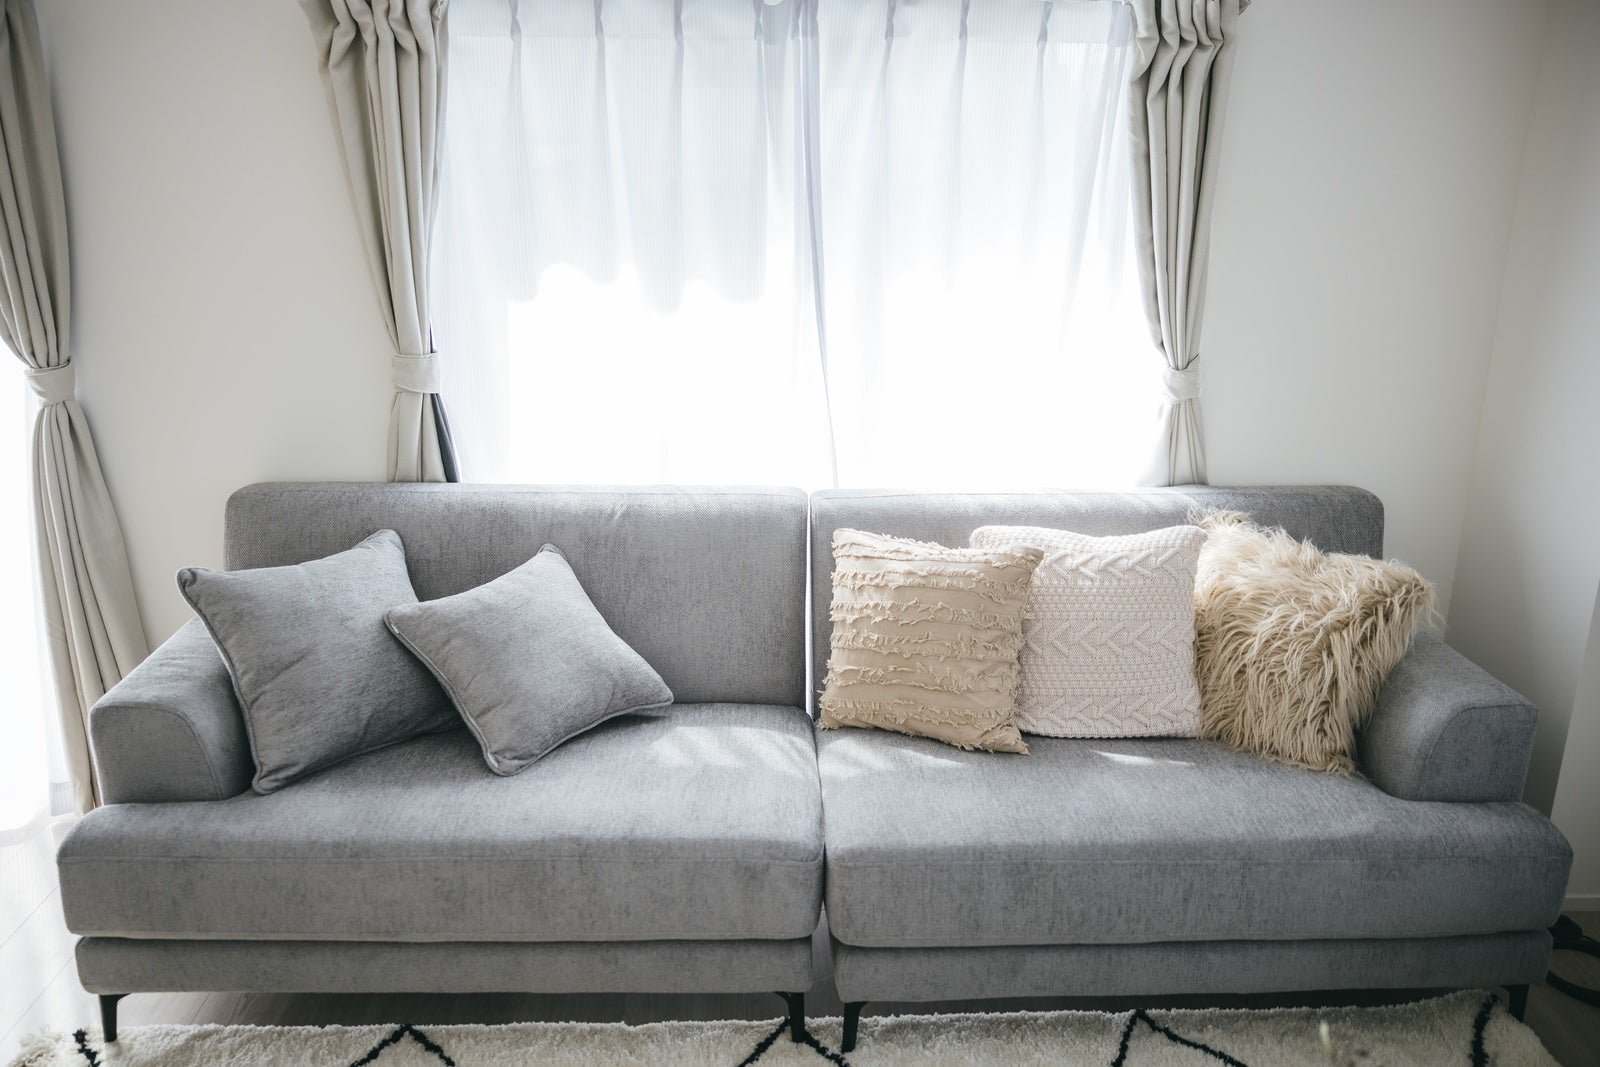 「リビングの灰色のソファー」の写真